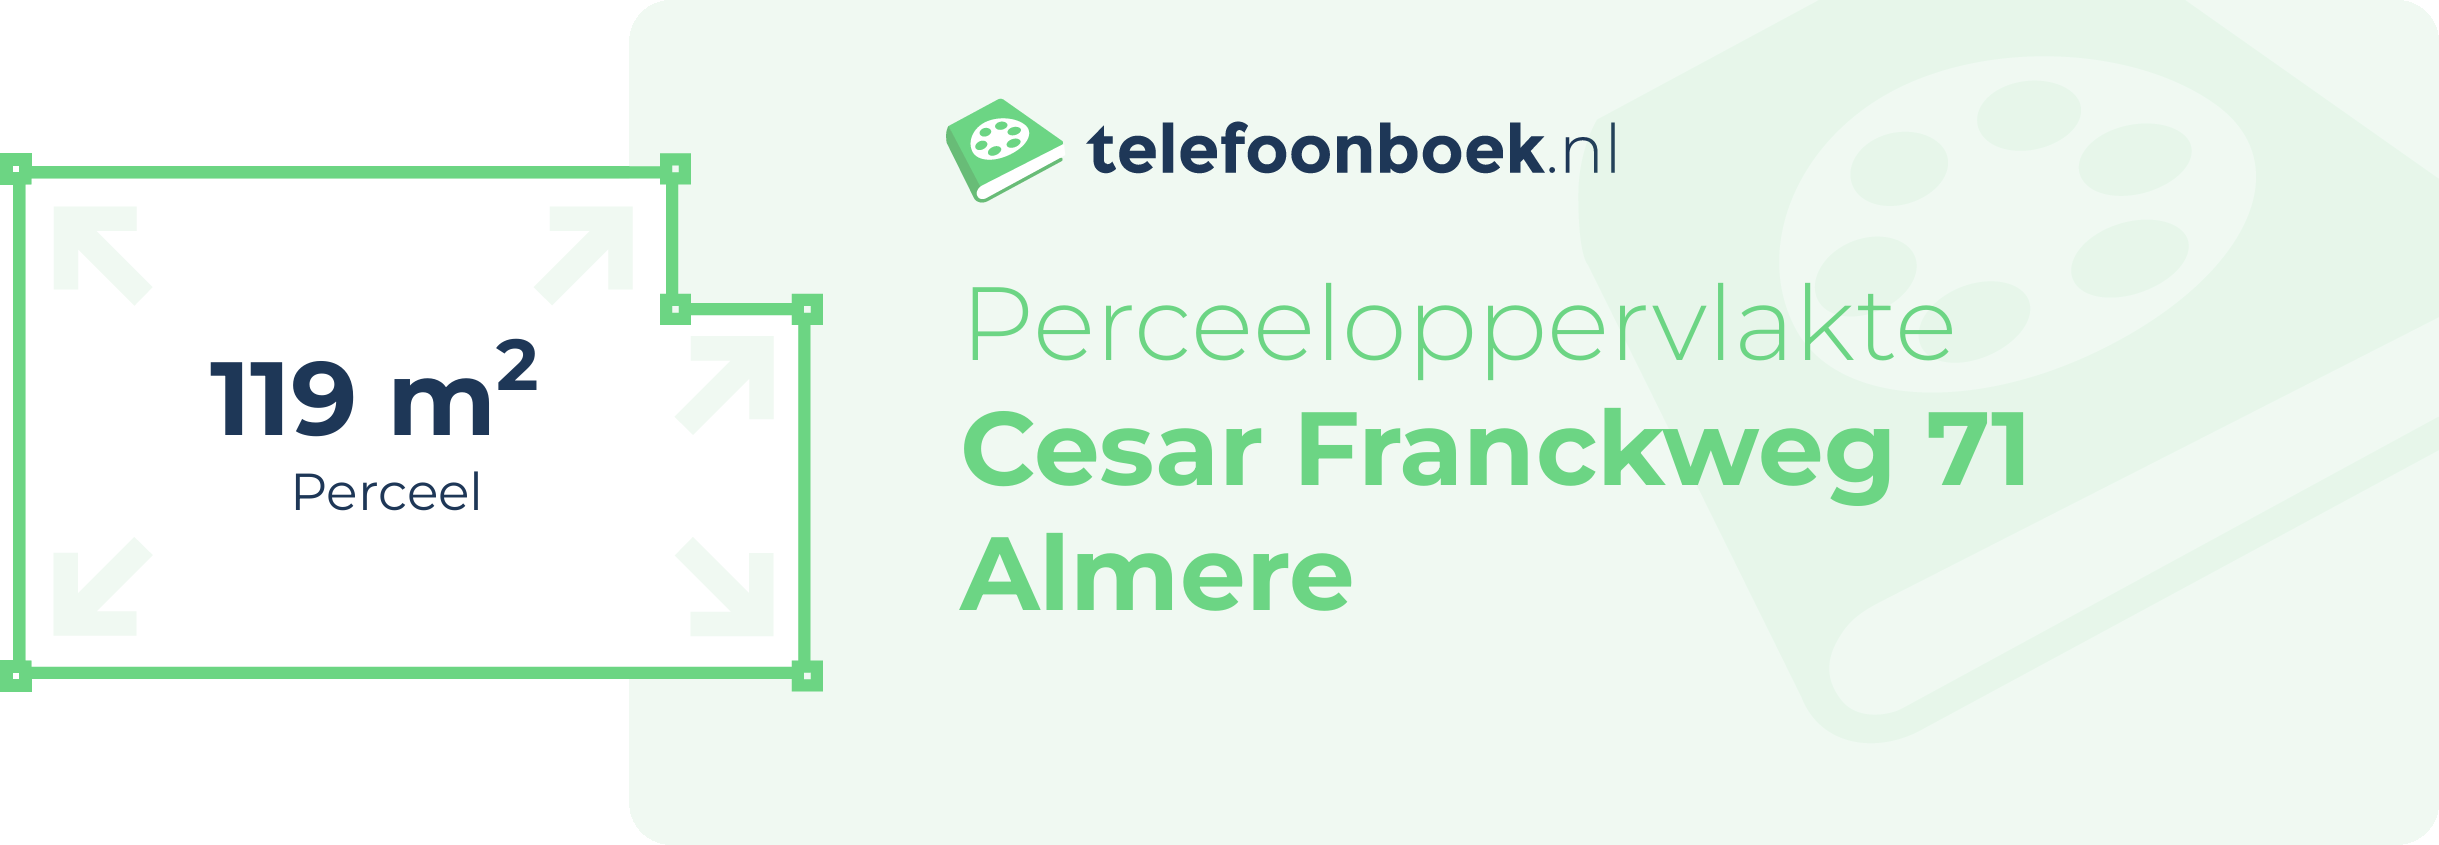 Perceeloppervlakte Cesar Franckweg 71 Almere